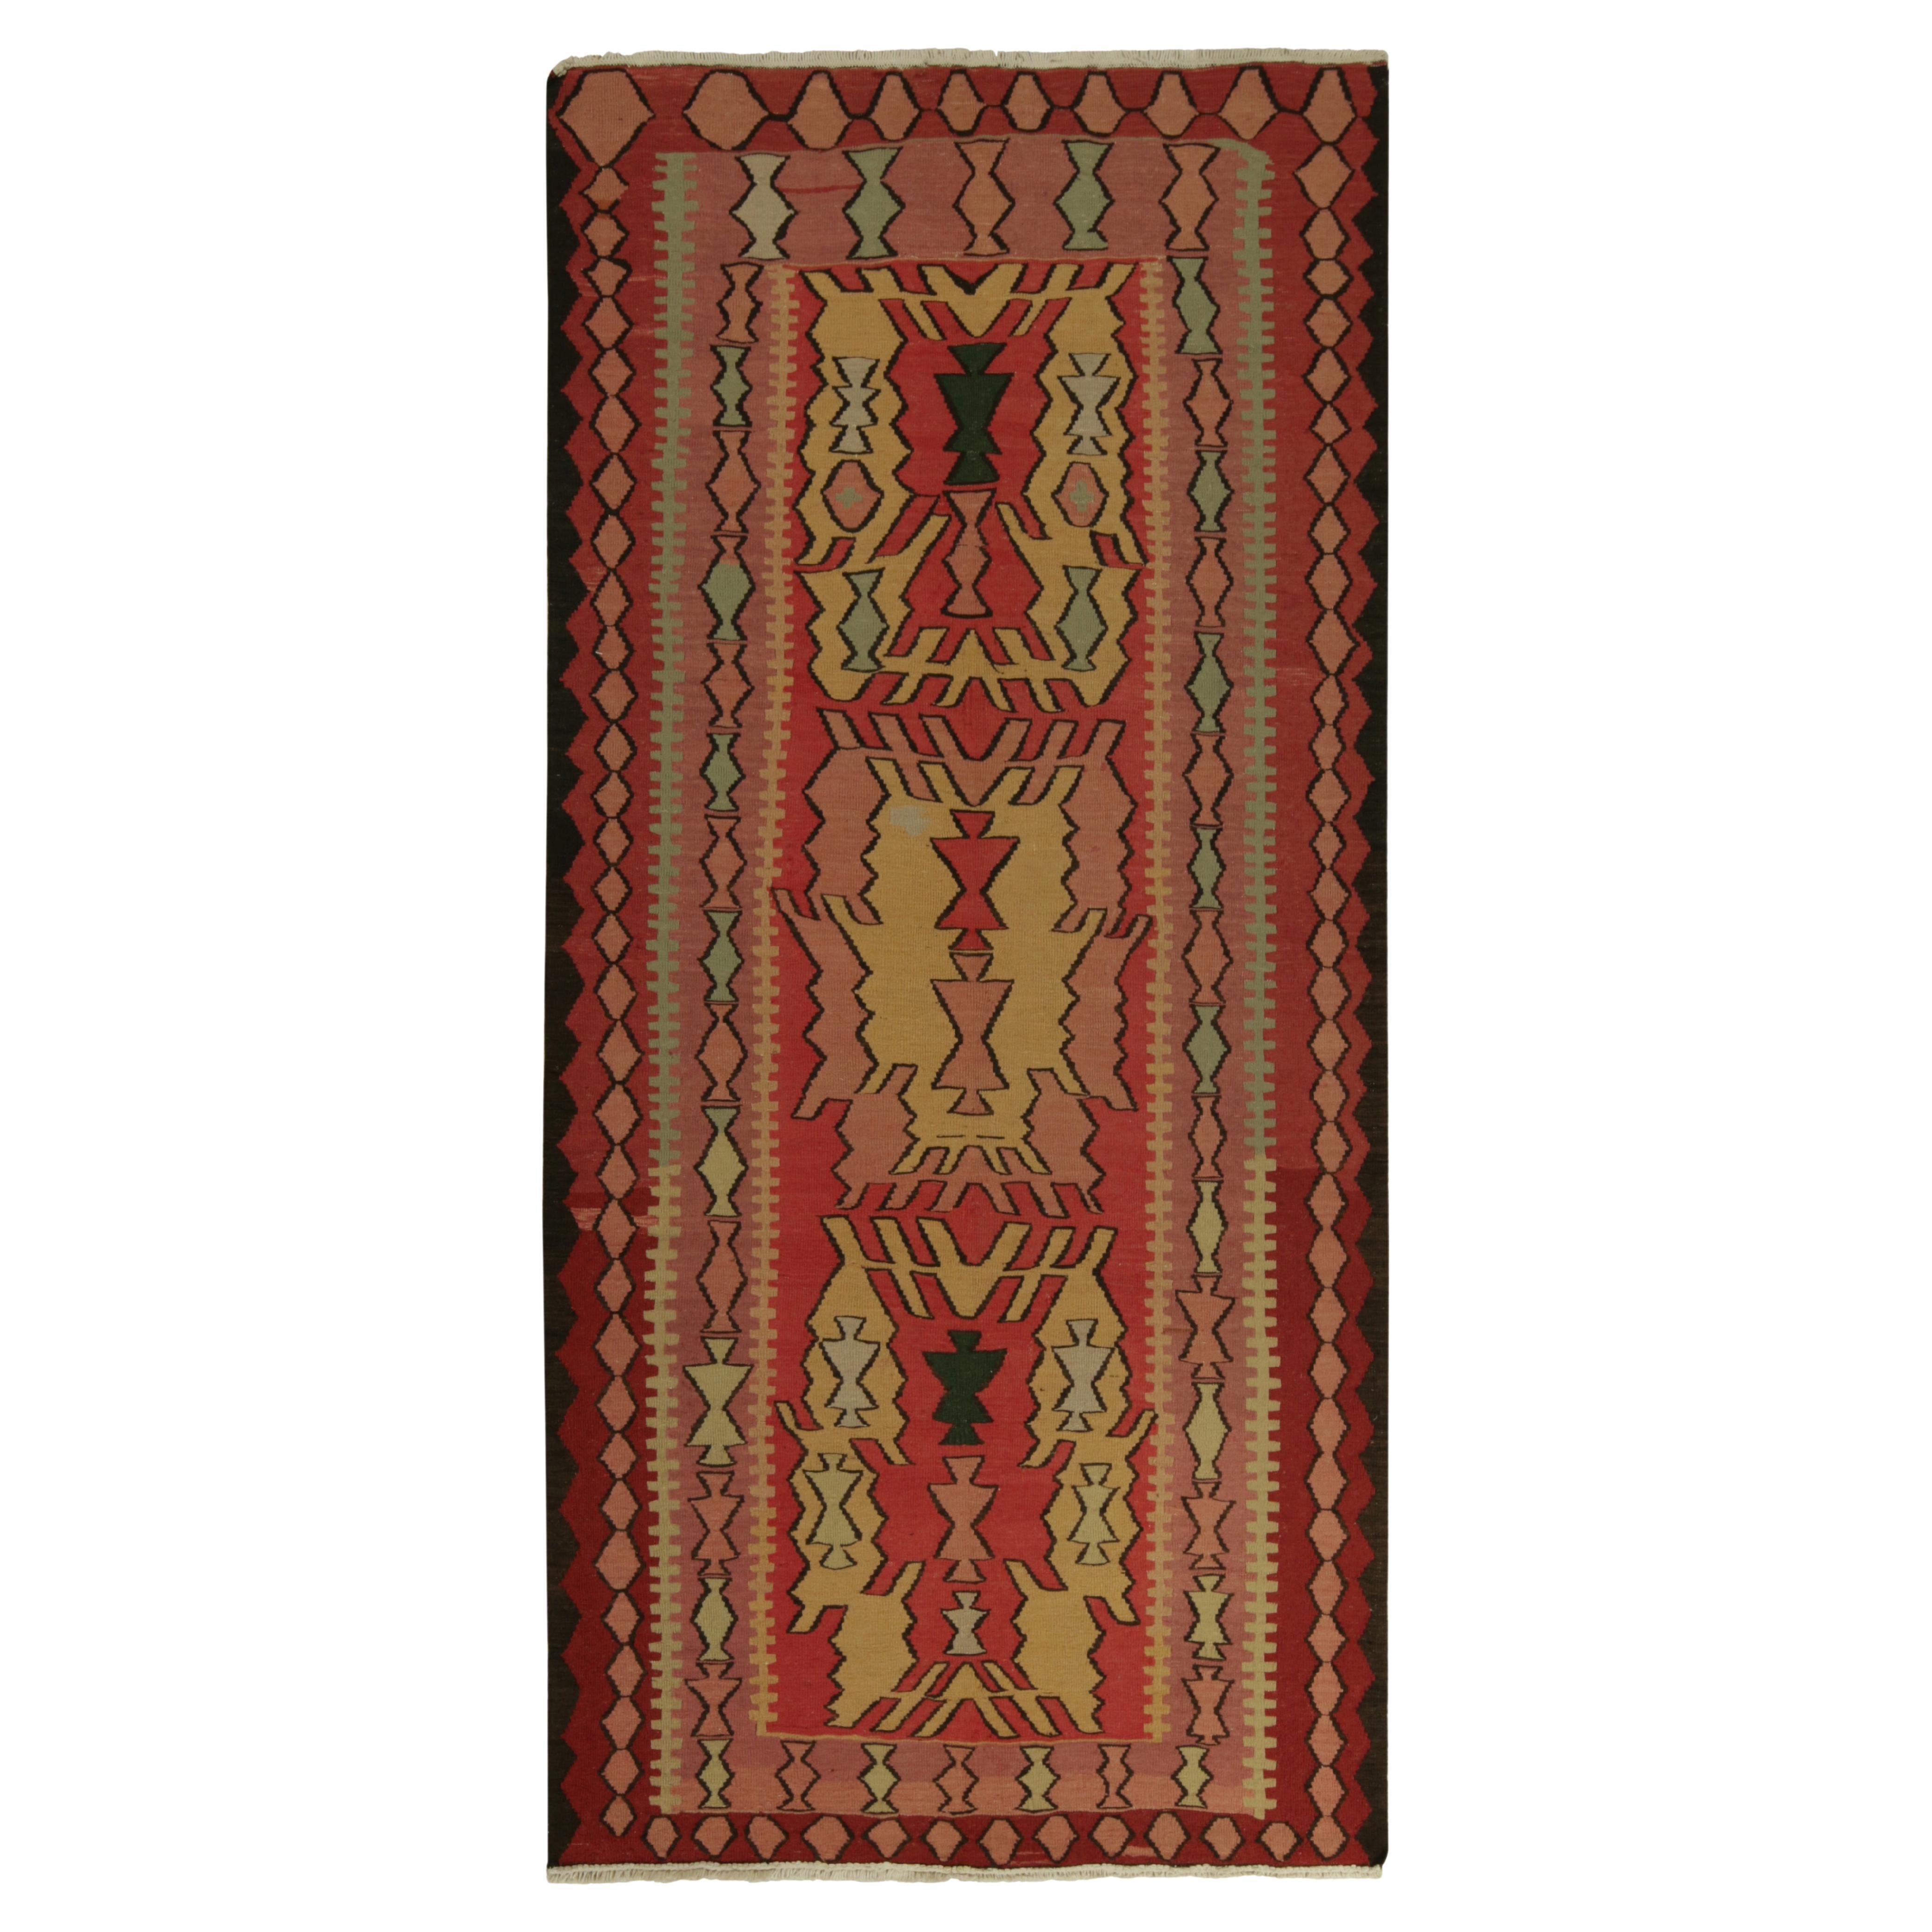 Persischer Stammeskunst-Kelim-Teppich in Rot, Rosa und Gold mit Muster